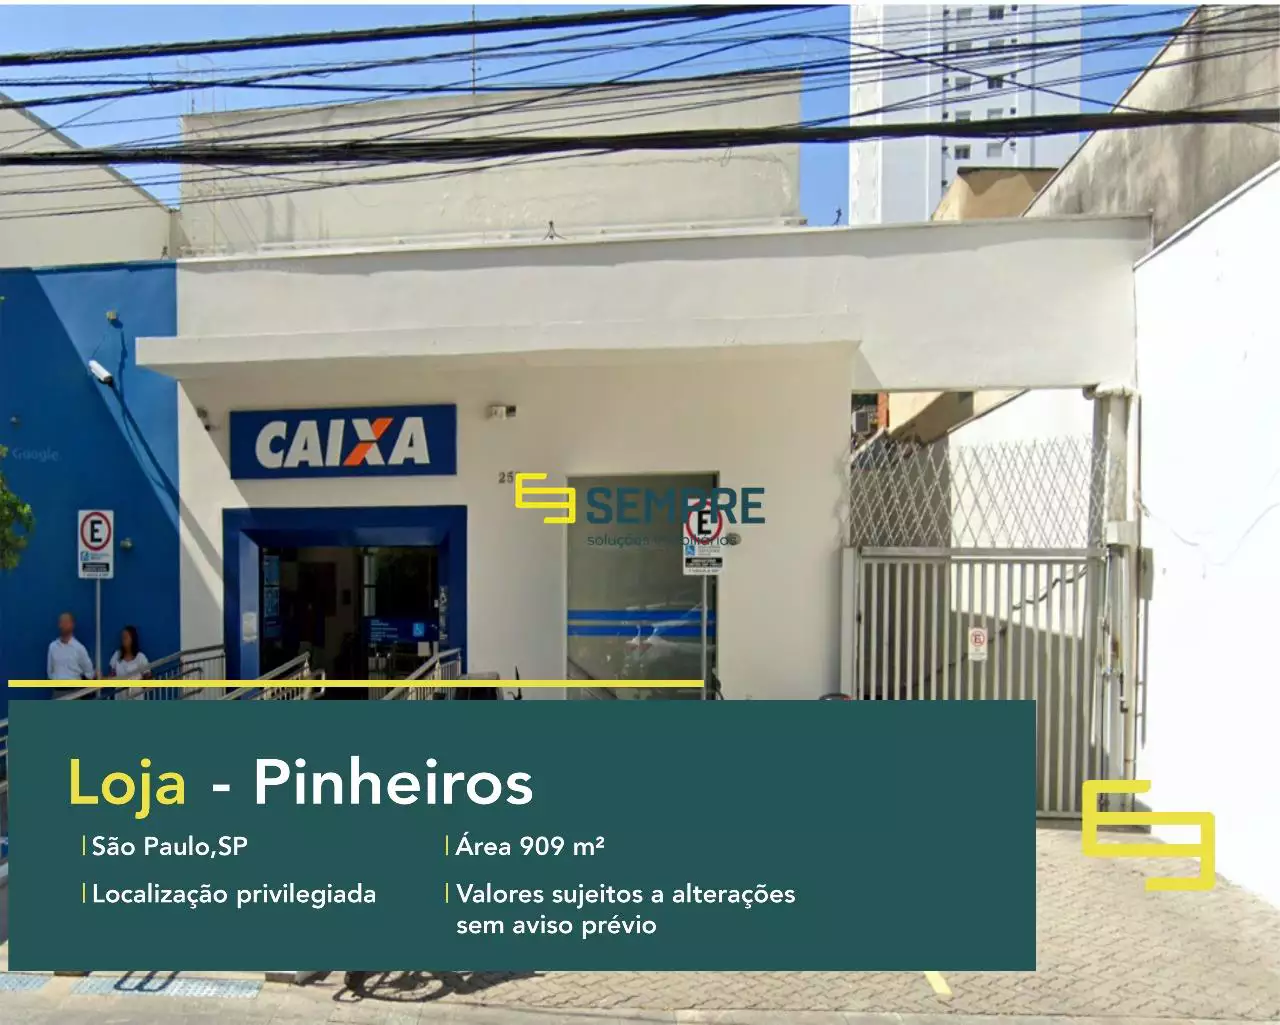 Loja à venda no Pinheiros em São Paulo, excelente localização. O estabelecimento comercial conta, sobretudo, com área de 909,6 m².